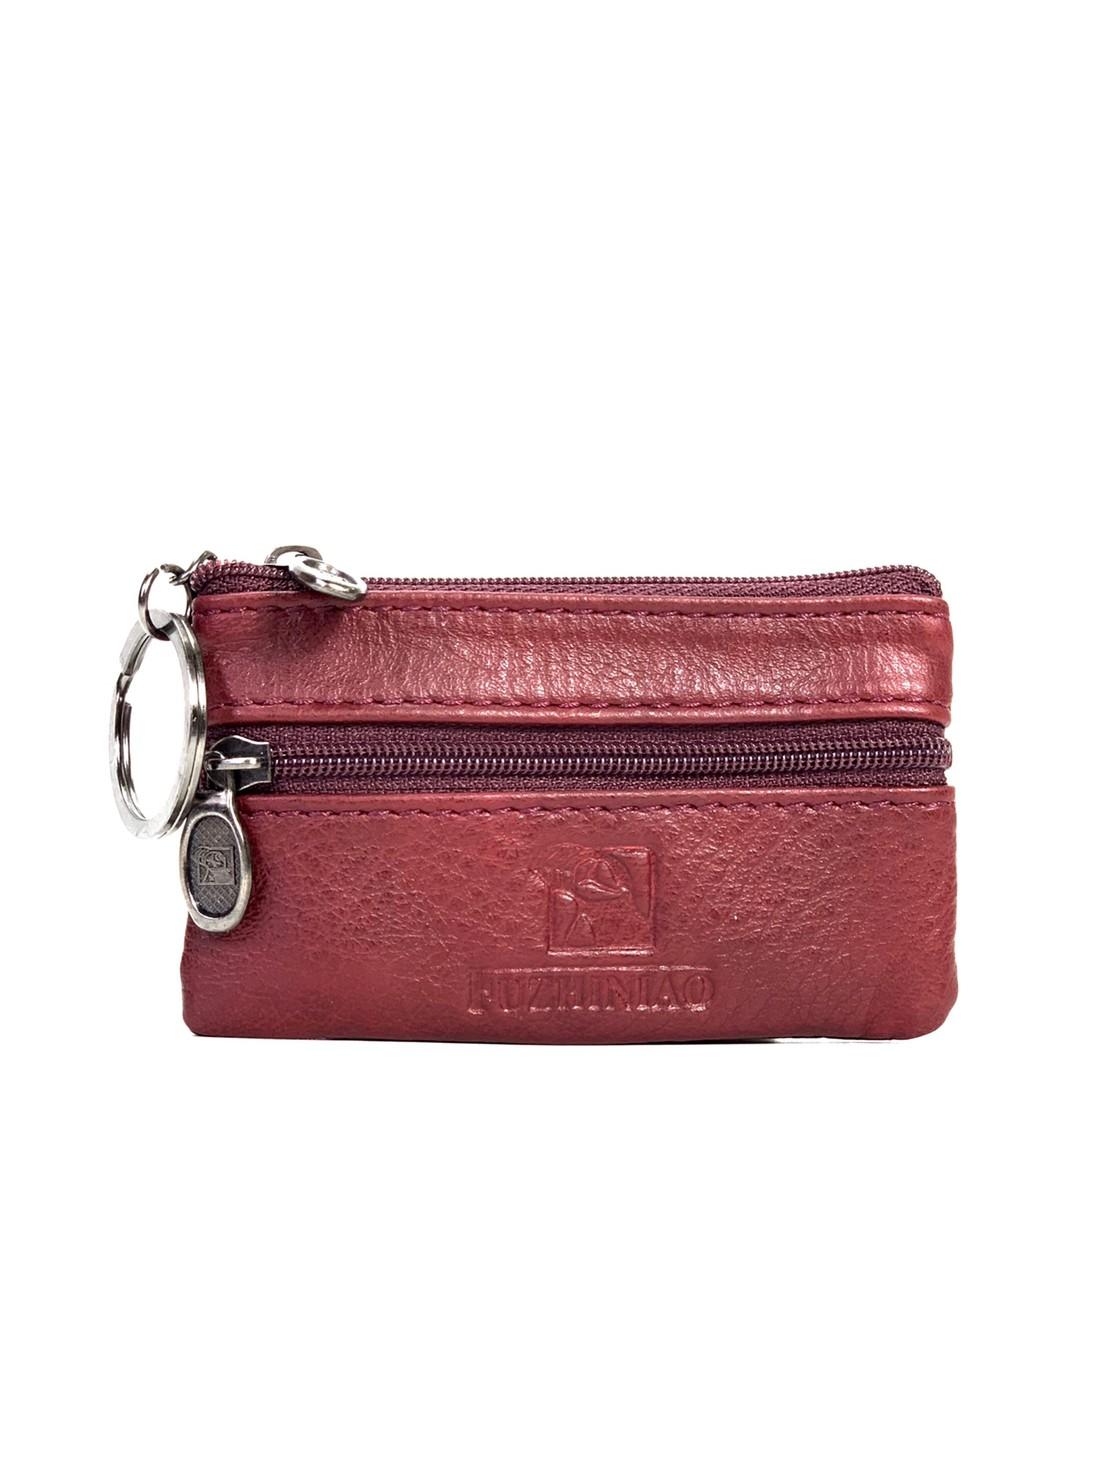 Chinatown Leather กระเป๋าหนังแท้ใส่เหรียญ กุญแจ หนังแท้ สีแดง